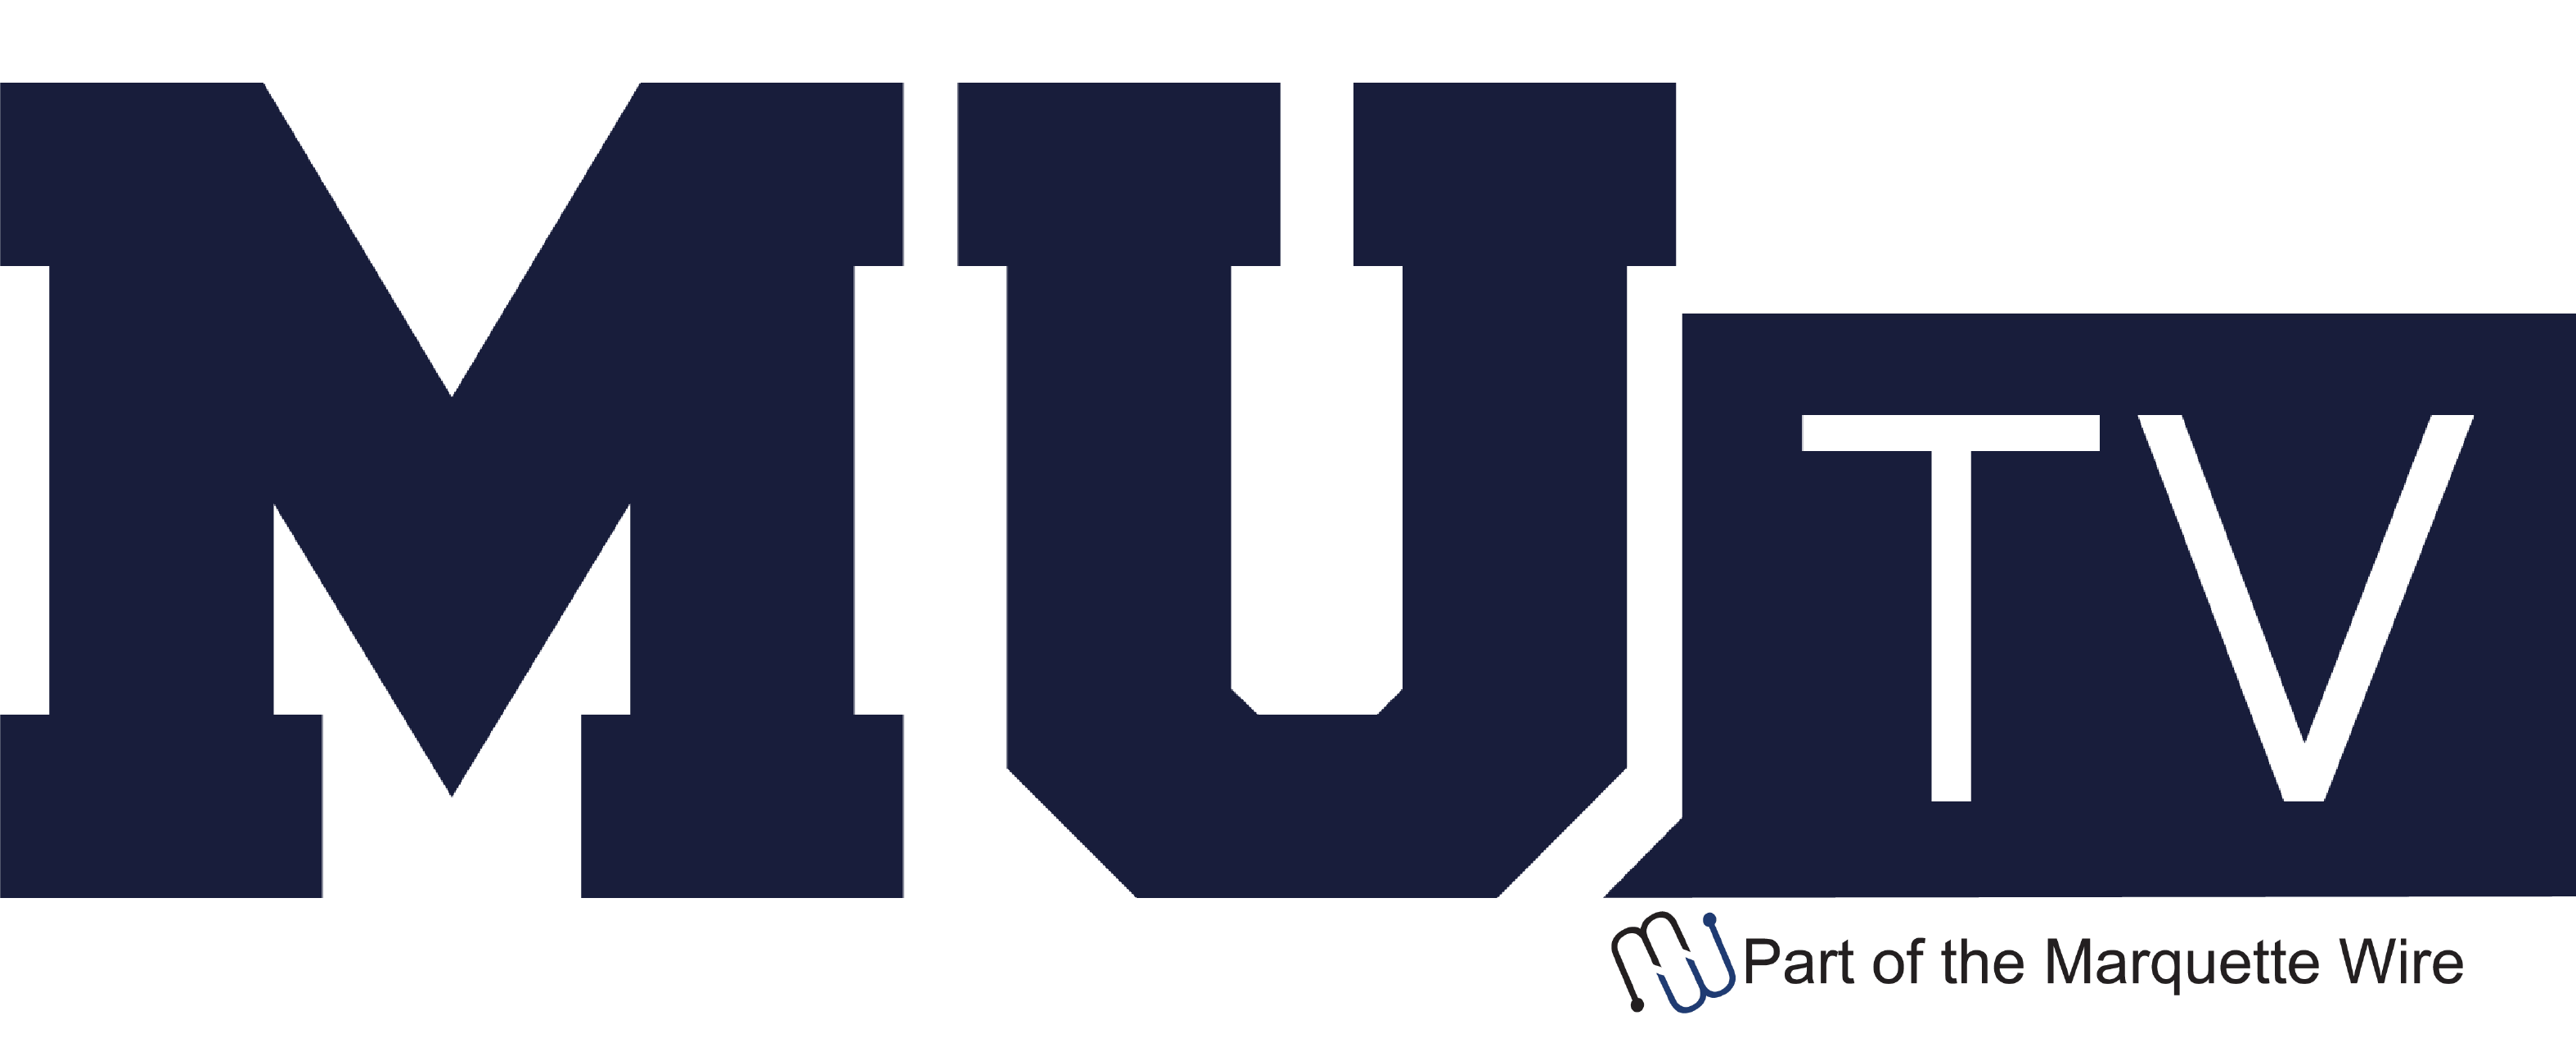 MU TV logo